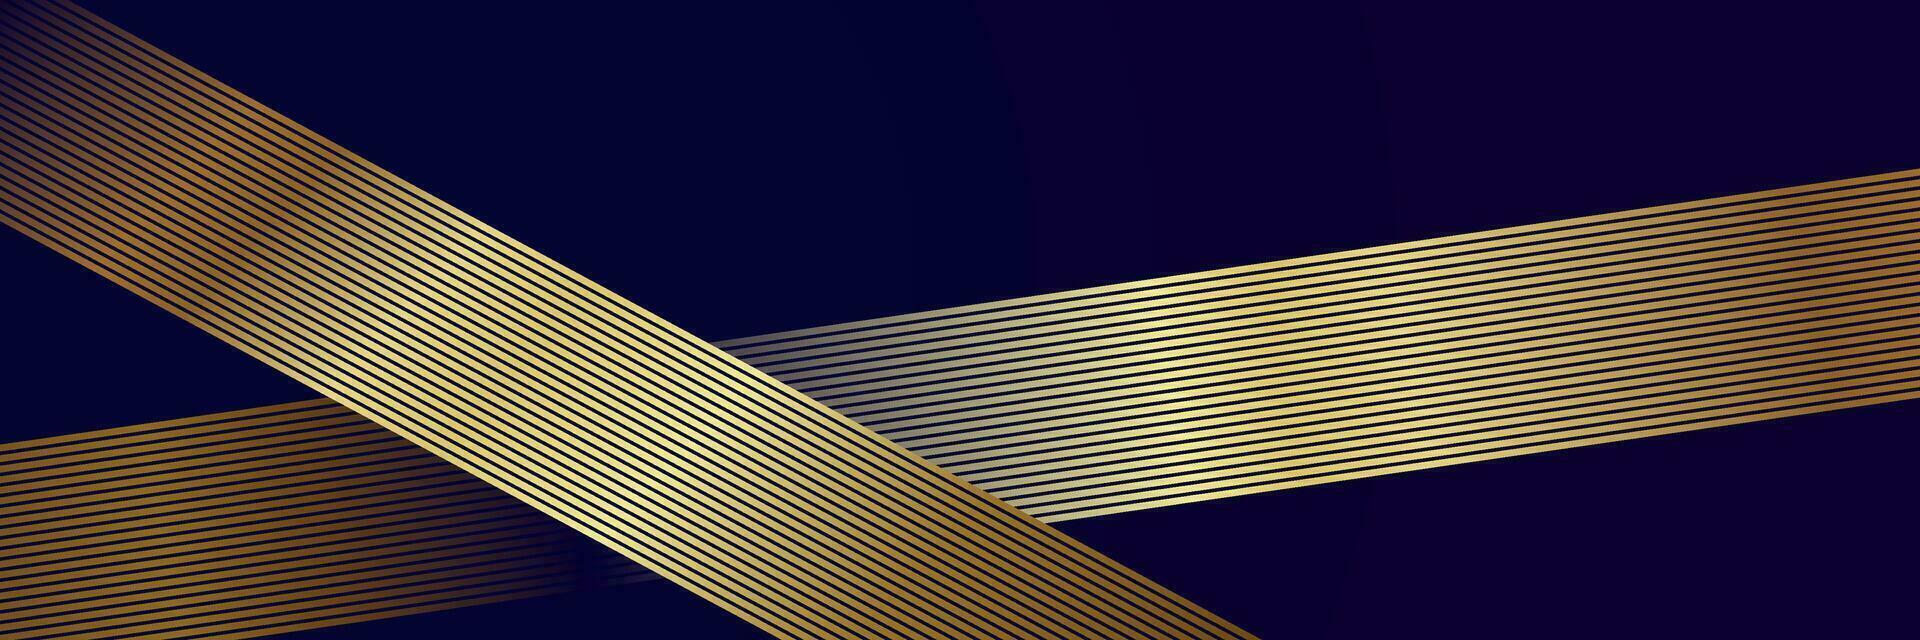 abstrakt mörk elegant lyx bakgrund med guld rader vektor